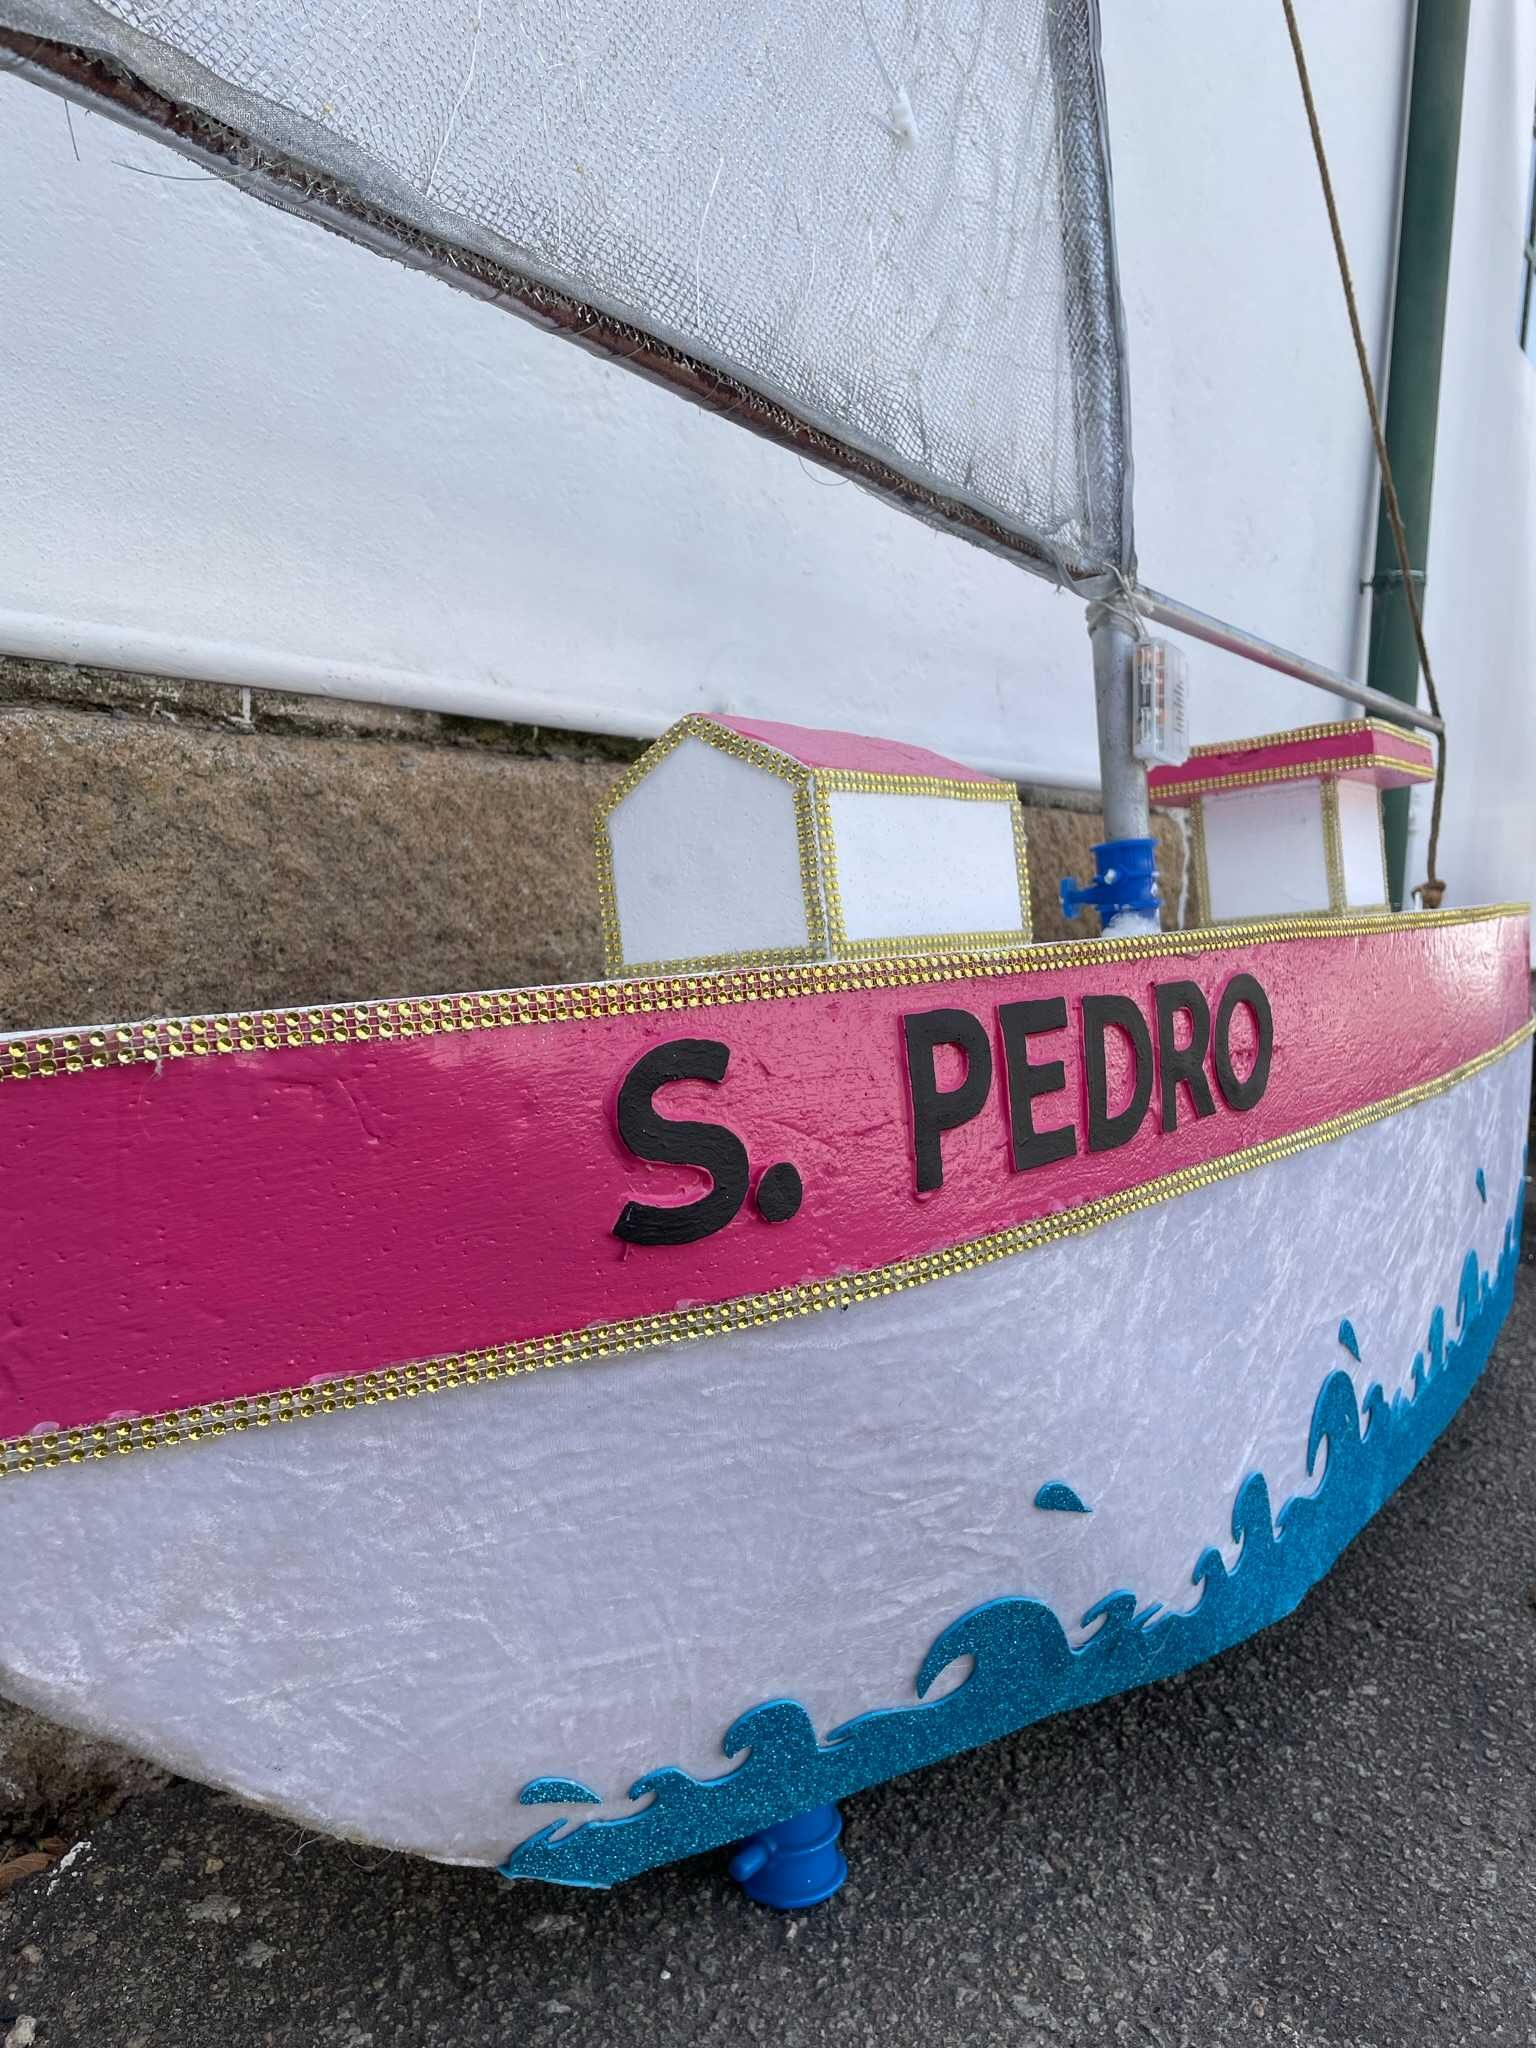 Mastros (barcos) de marchas populares São Pedro